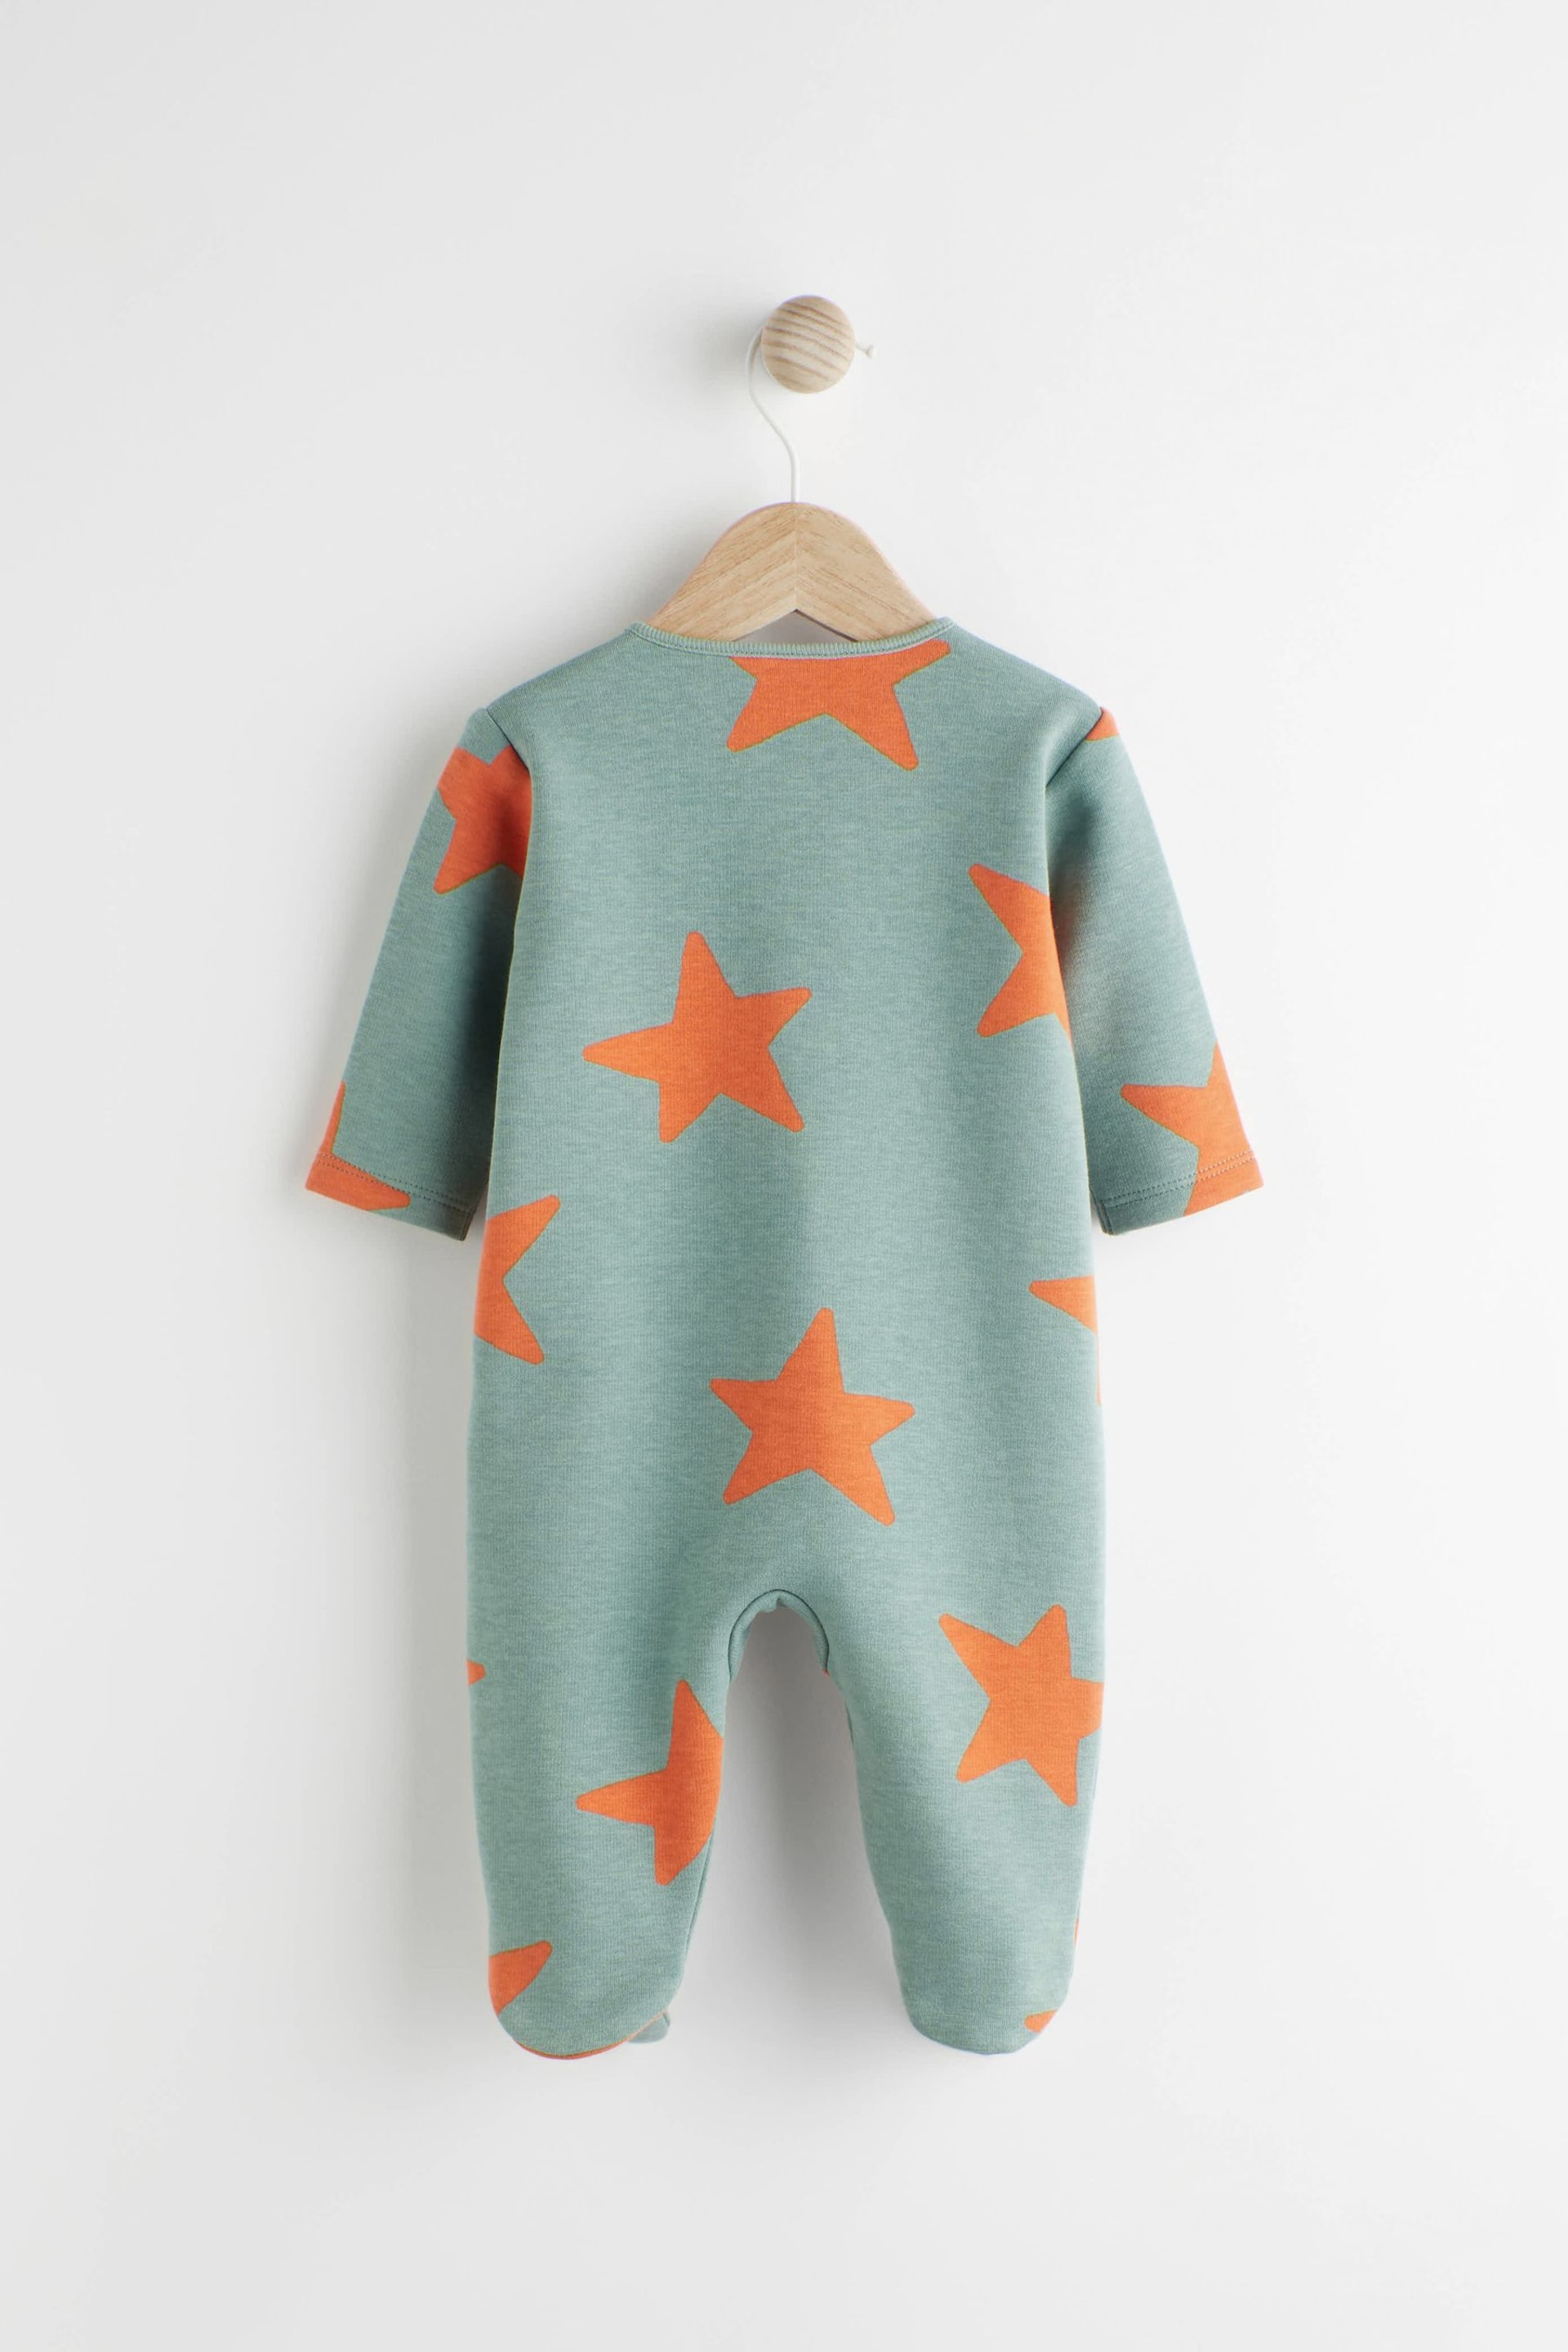 Teal Blue Fleece Lined Baby Sleepsuit - Image 5 of 10